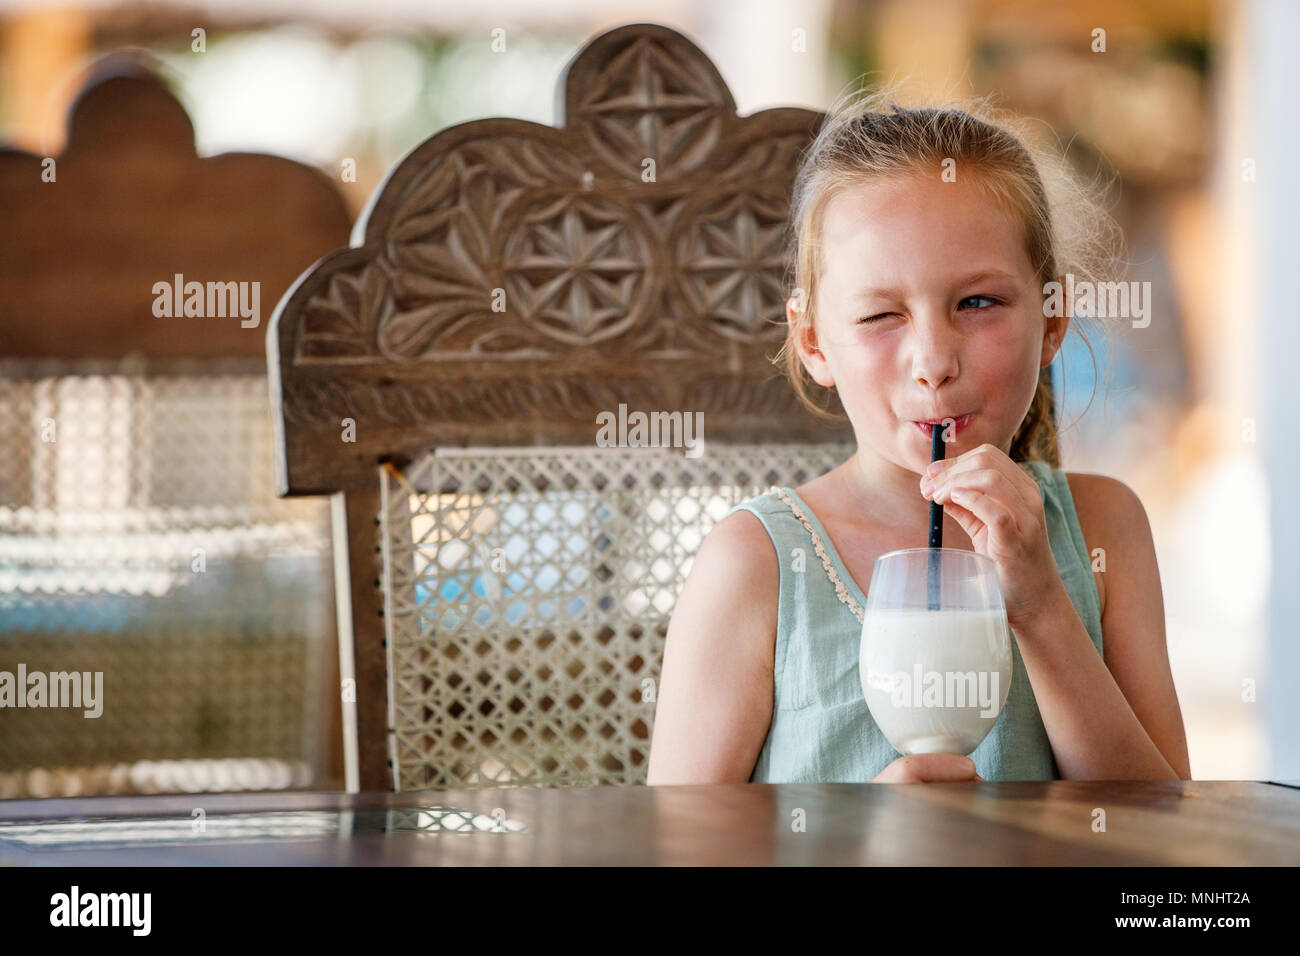 Portrait of adorable little girl drinking milkshake Stock Photo